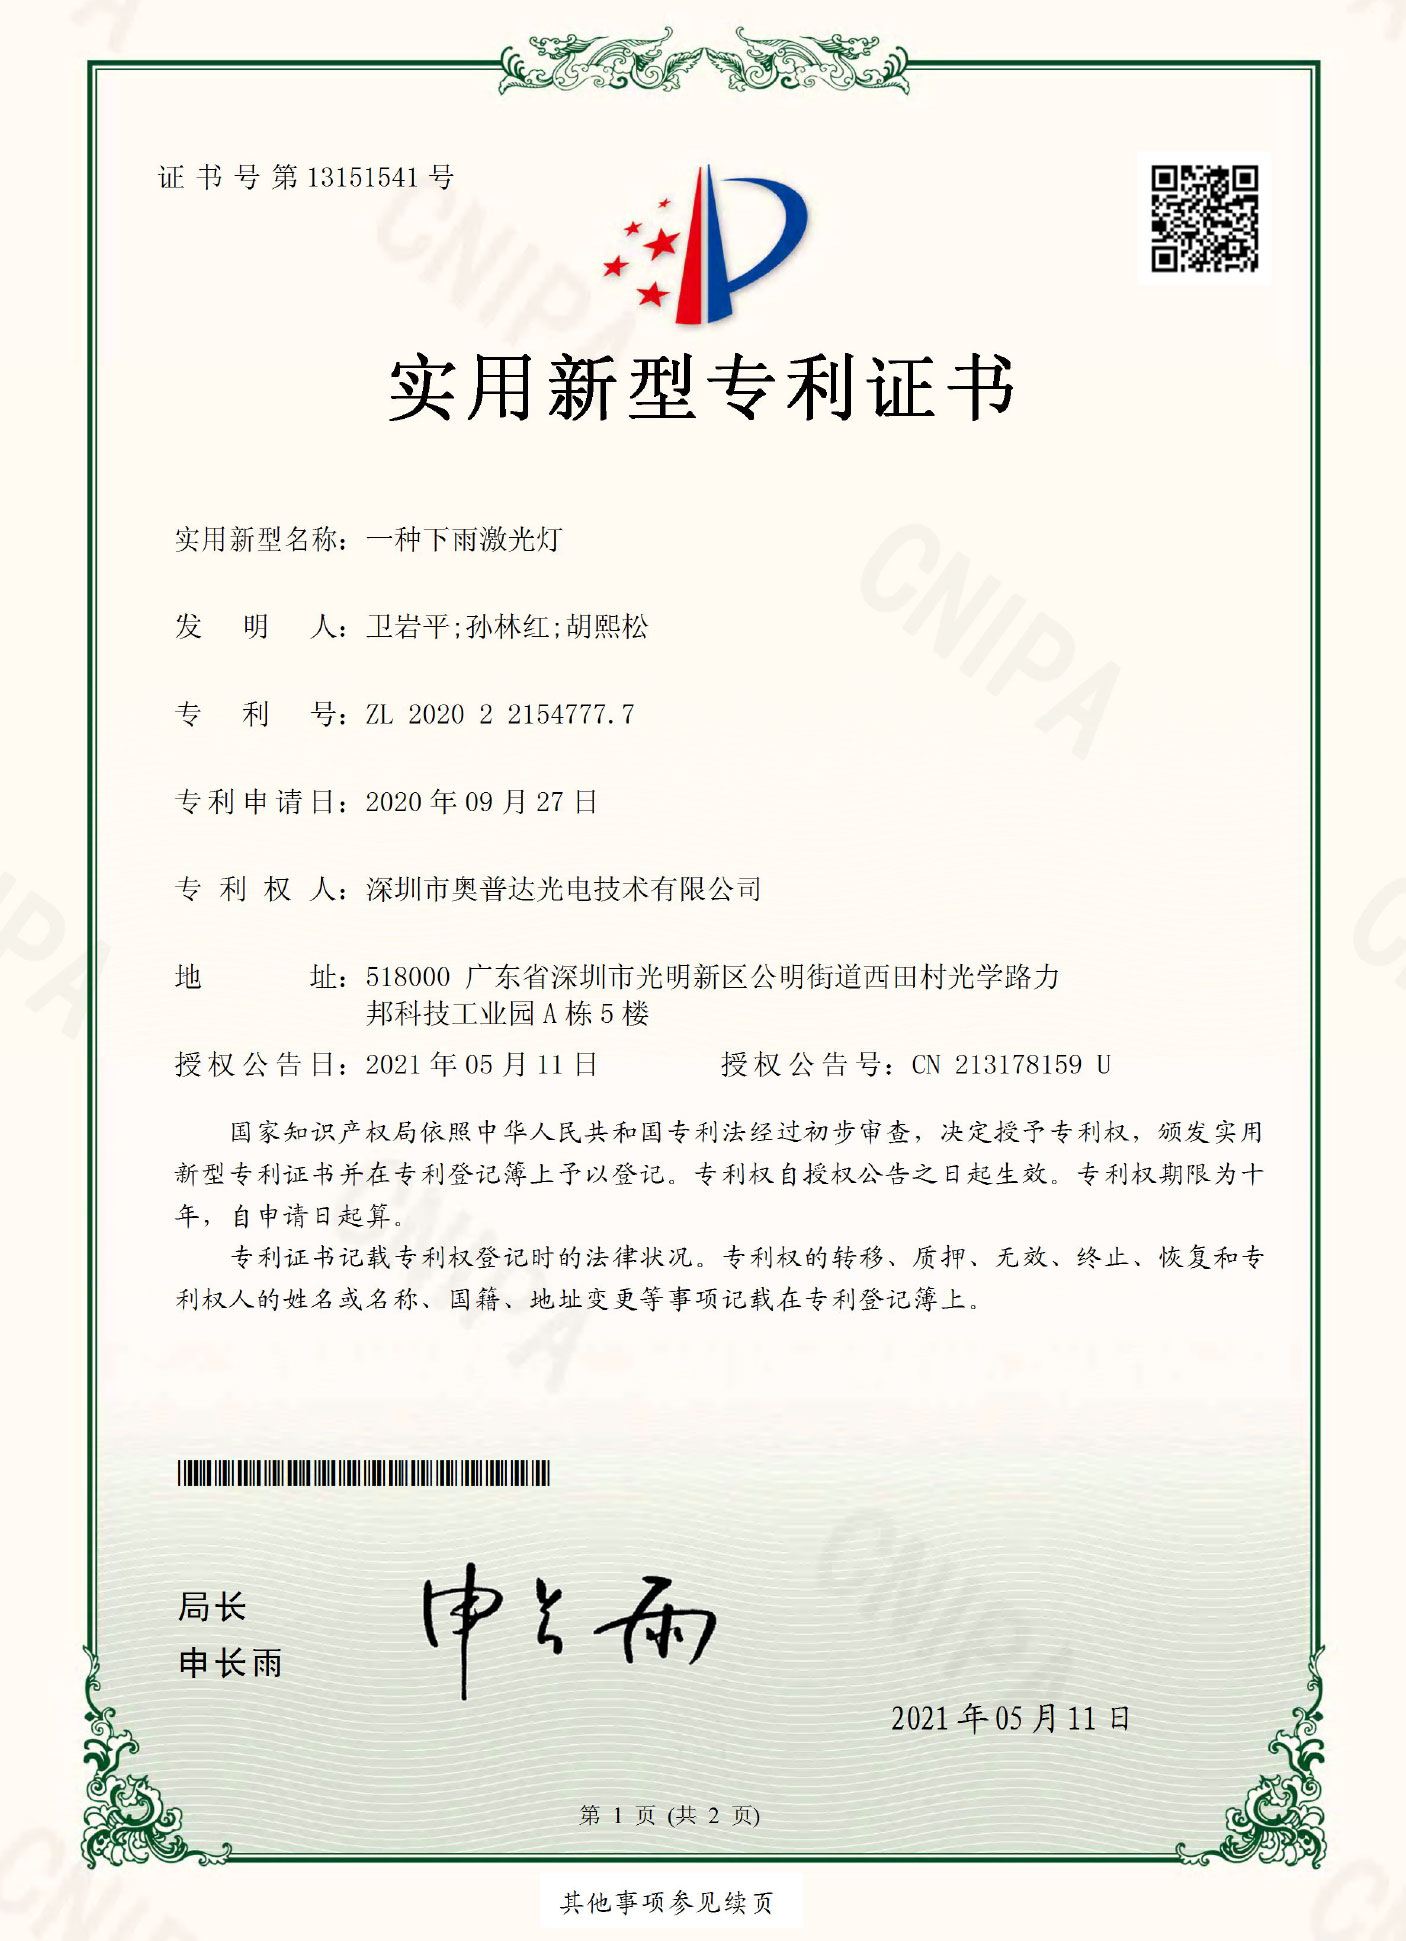 深圳市奥普达光电技术有限公司-2020221547777-实用新型专利证书(签章)